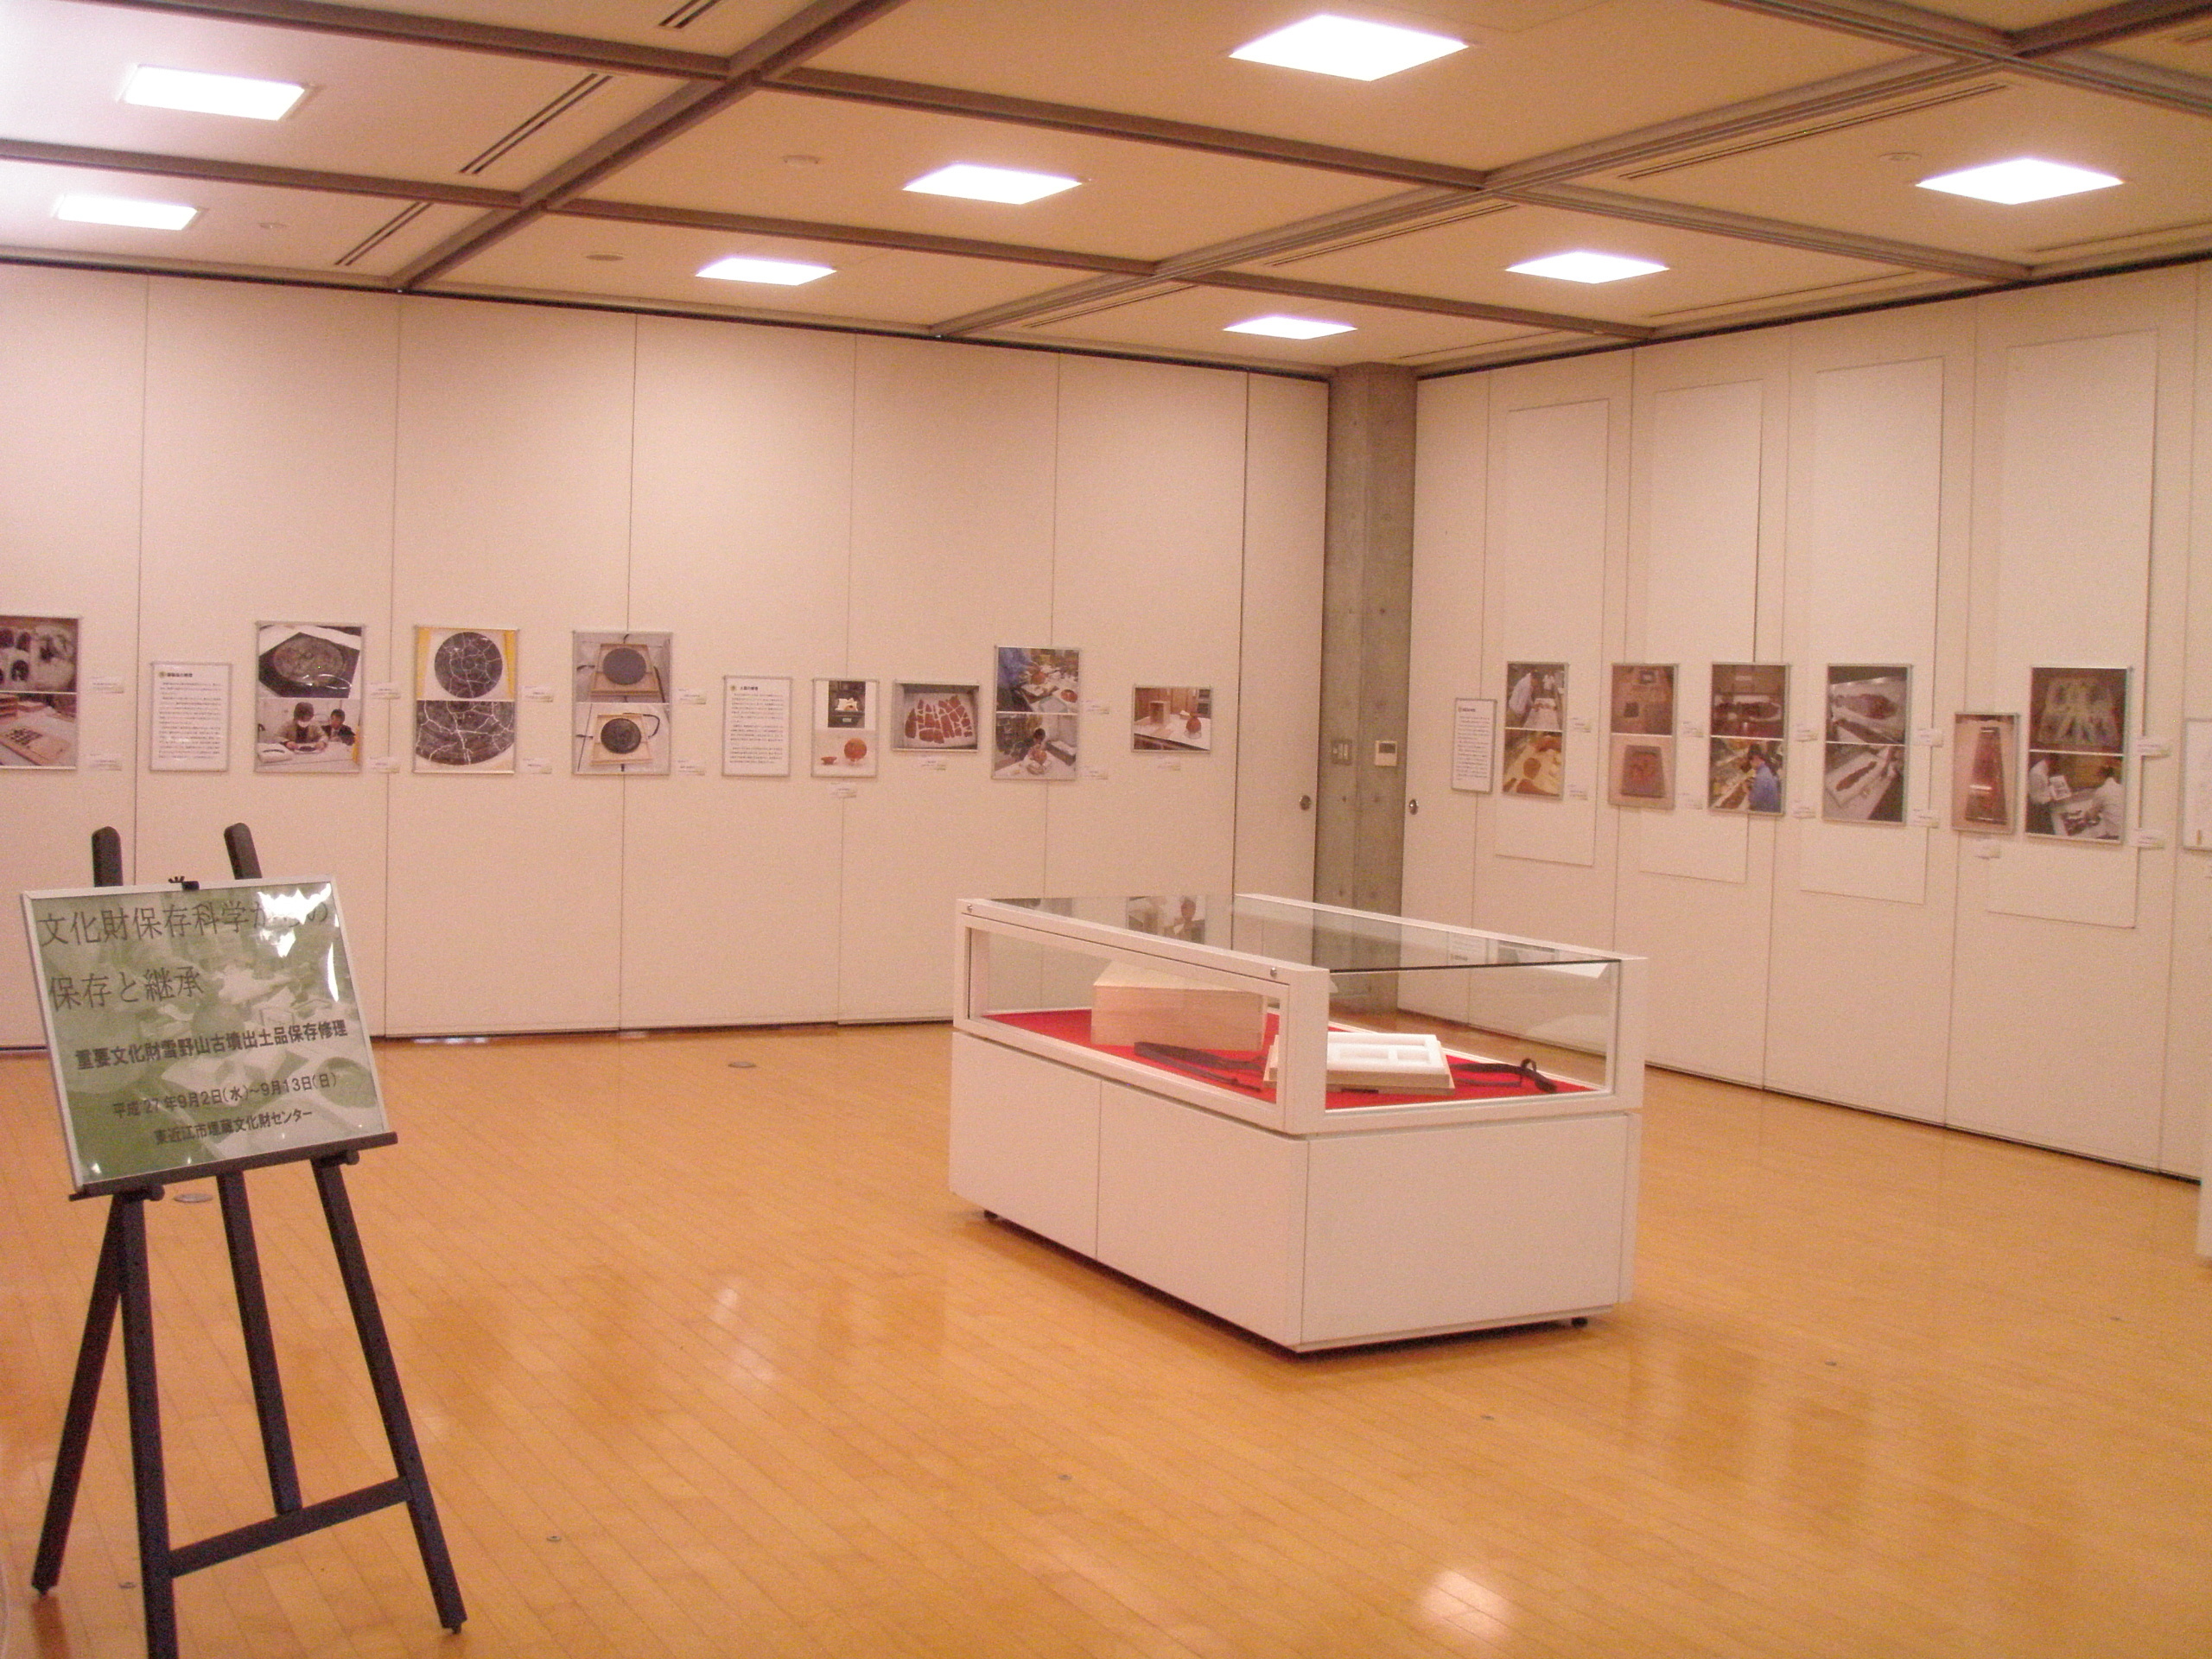 能登川博物館ギャラリー展示の風景写真です。